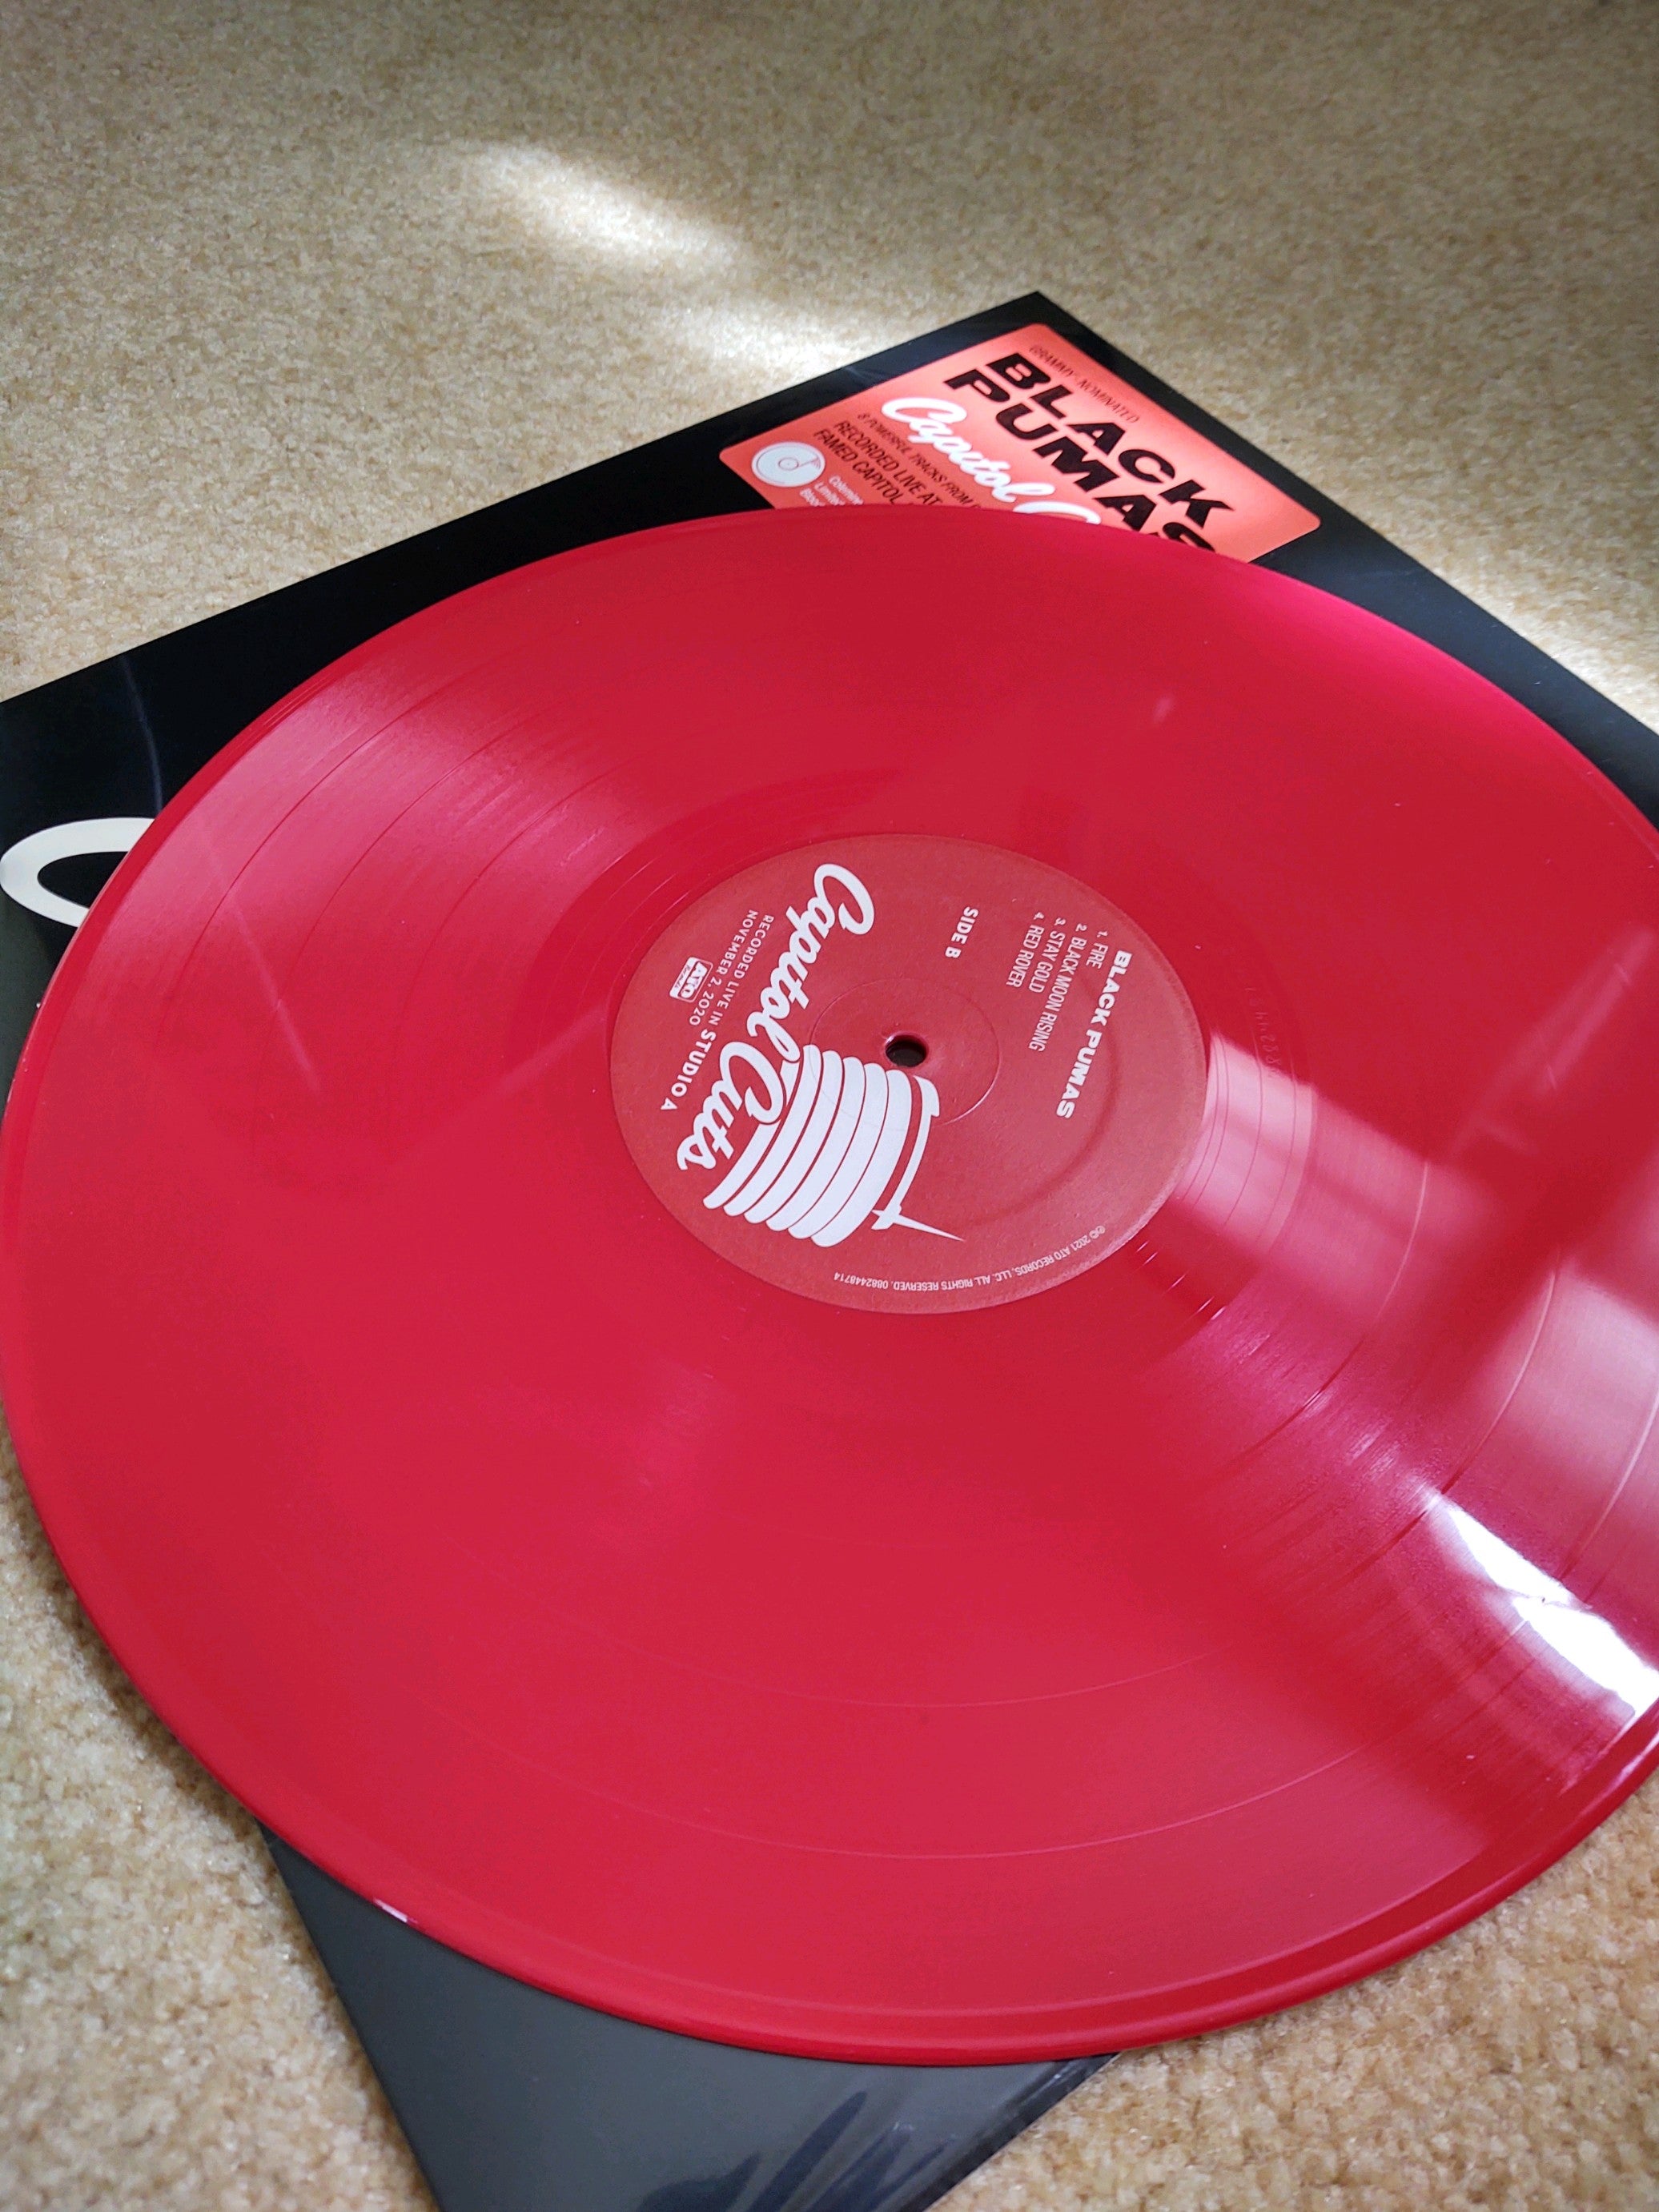 Black Pumas - Capitol Cuts: Live from Studio A [Opaque Red Vinyl]